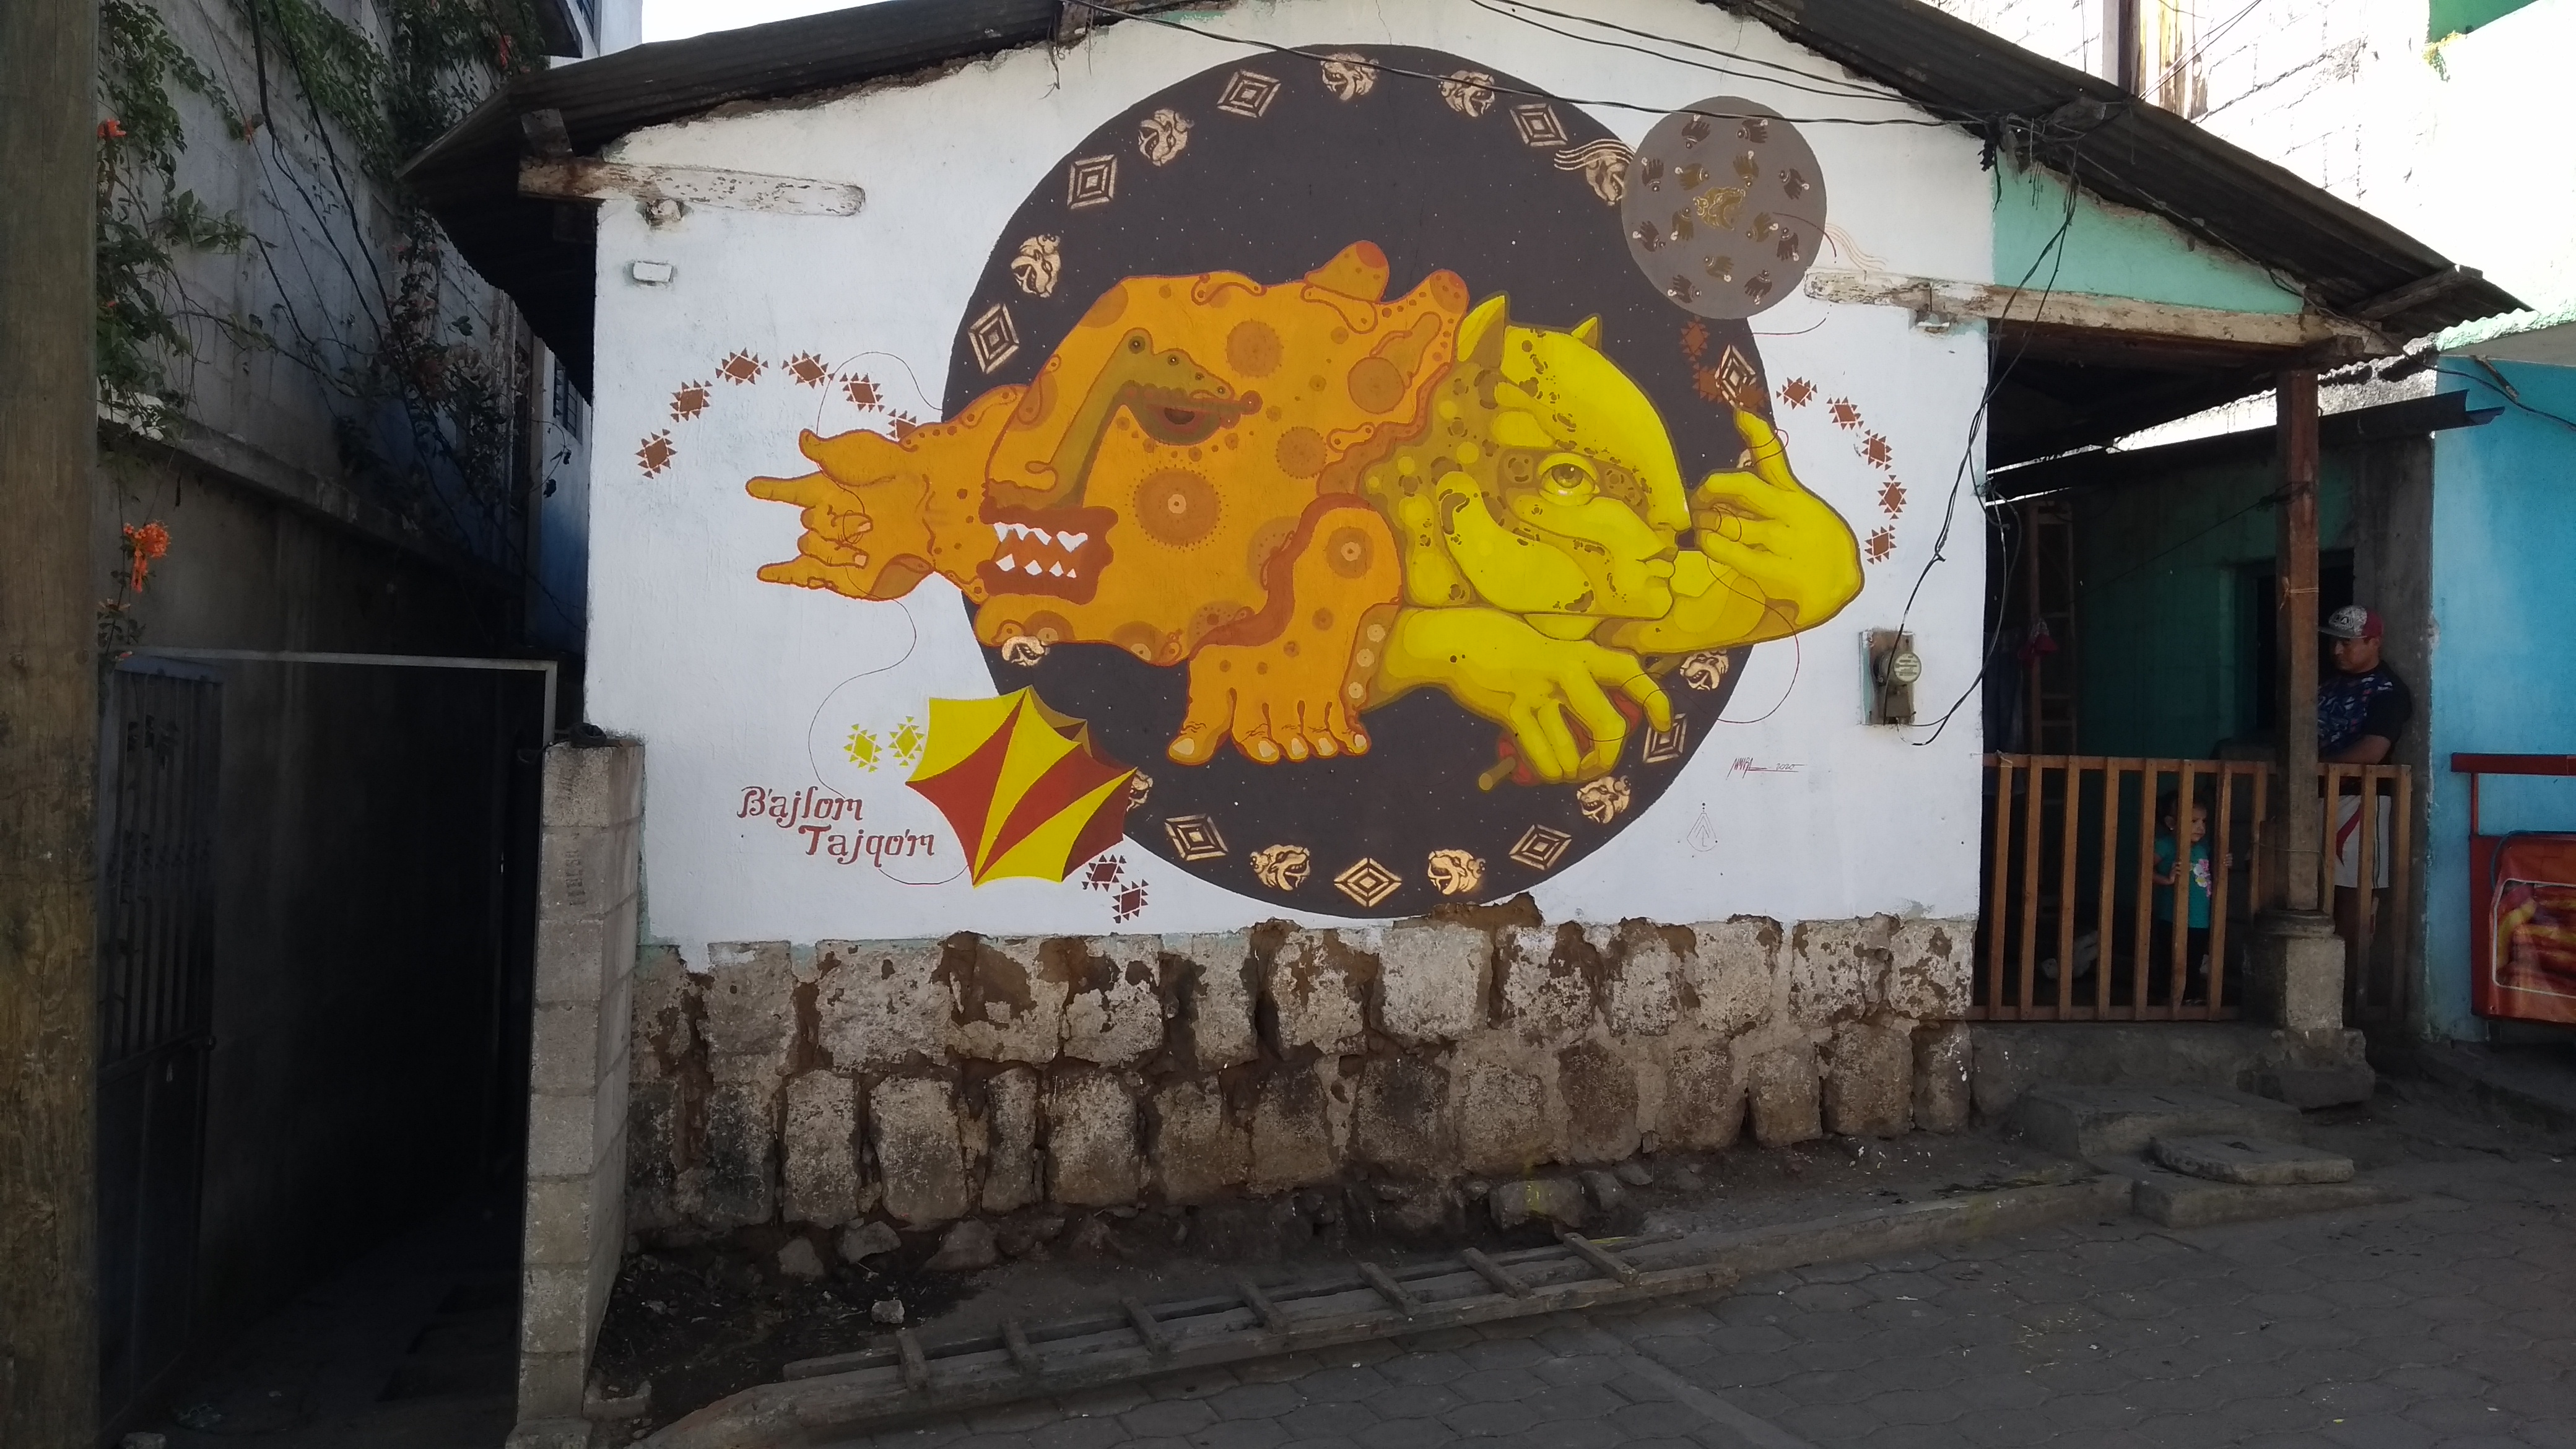 El artista Luis Caal ha dado vida a murales en diferentes lugares de Guatemala.   (Foto Prensa Libre: cortesía Luis Caal)